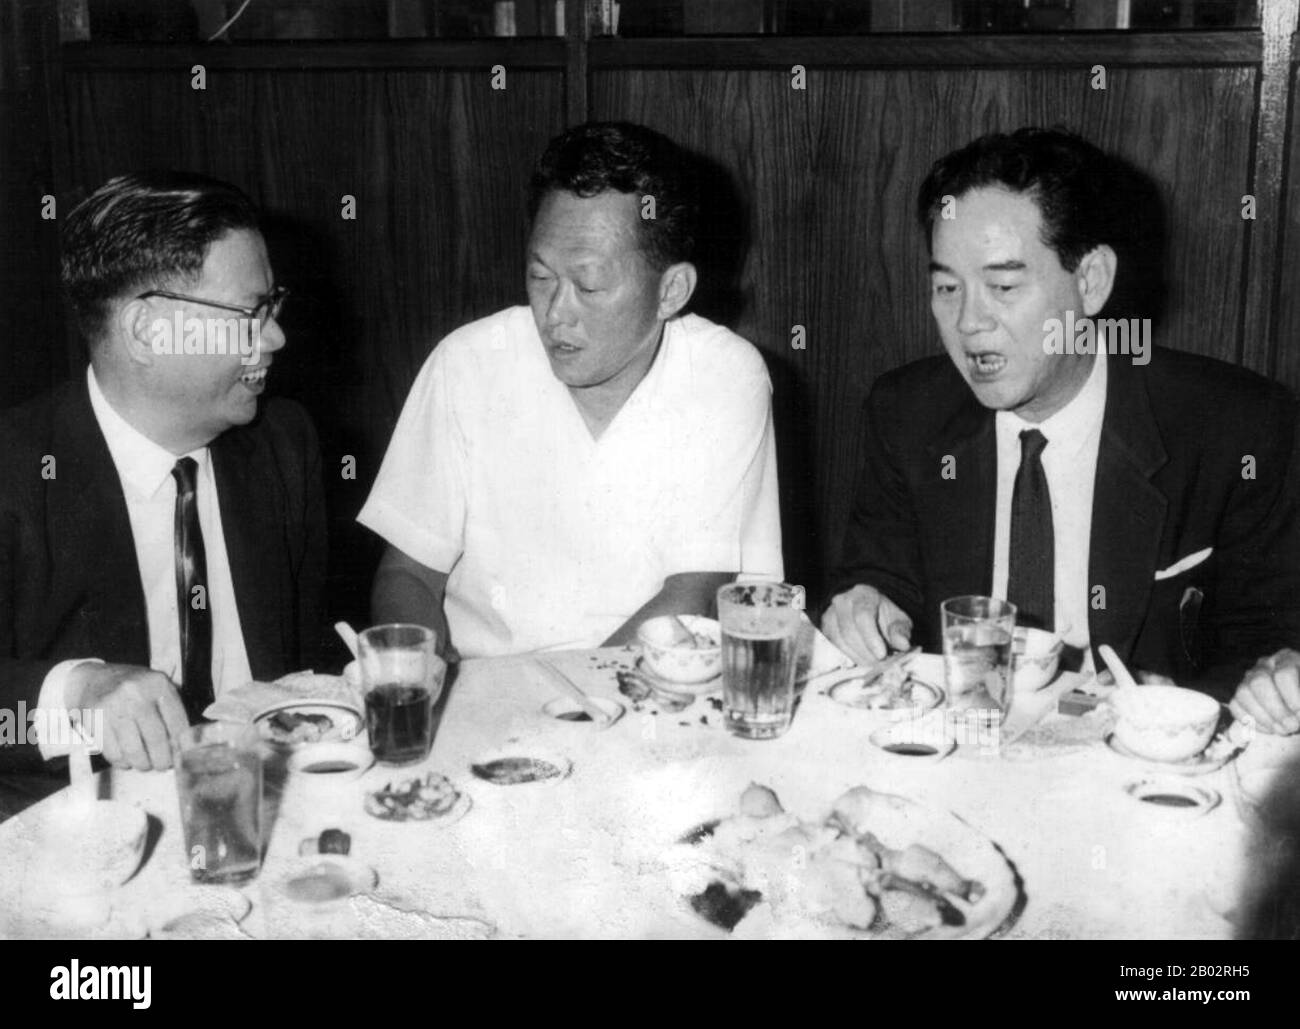 Lee Kuan Yew, GCMG, CH (geboren als Harry Lee Kuan Yew, 16. September 1923 - 23. März 2015) war ein singapurischer Politiker. Er war der erste Premierminister von Singapur, der drei Jahrzehnte lang regnete. Er wurde als "Gründervater" und "Architekt" des modernen Singapur bezeichnet. Als Mitbegründer und erster Generalsekretär der People's Action Party (PAP) führte er die Partei von 1959 bis 1990 zu acht Siegen, Und beaufsichtigte die Trennung Singapurs von Malaysia im Jahr 1965 und seine anschließende Umwandlung von einem relativ unterentwickelten kolonialen Außenposten ohne natürliche Ressourcen in einen "Ersten Wo" Stockfoto